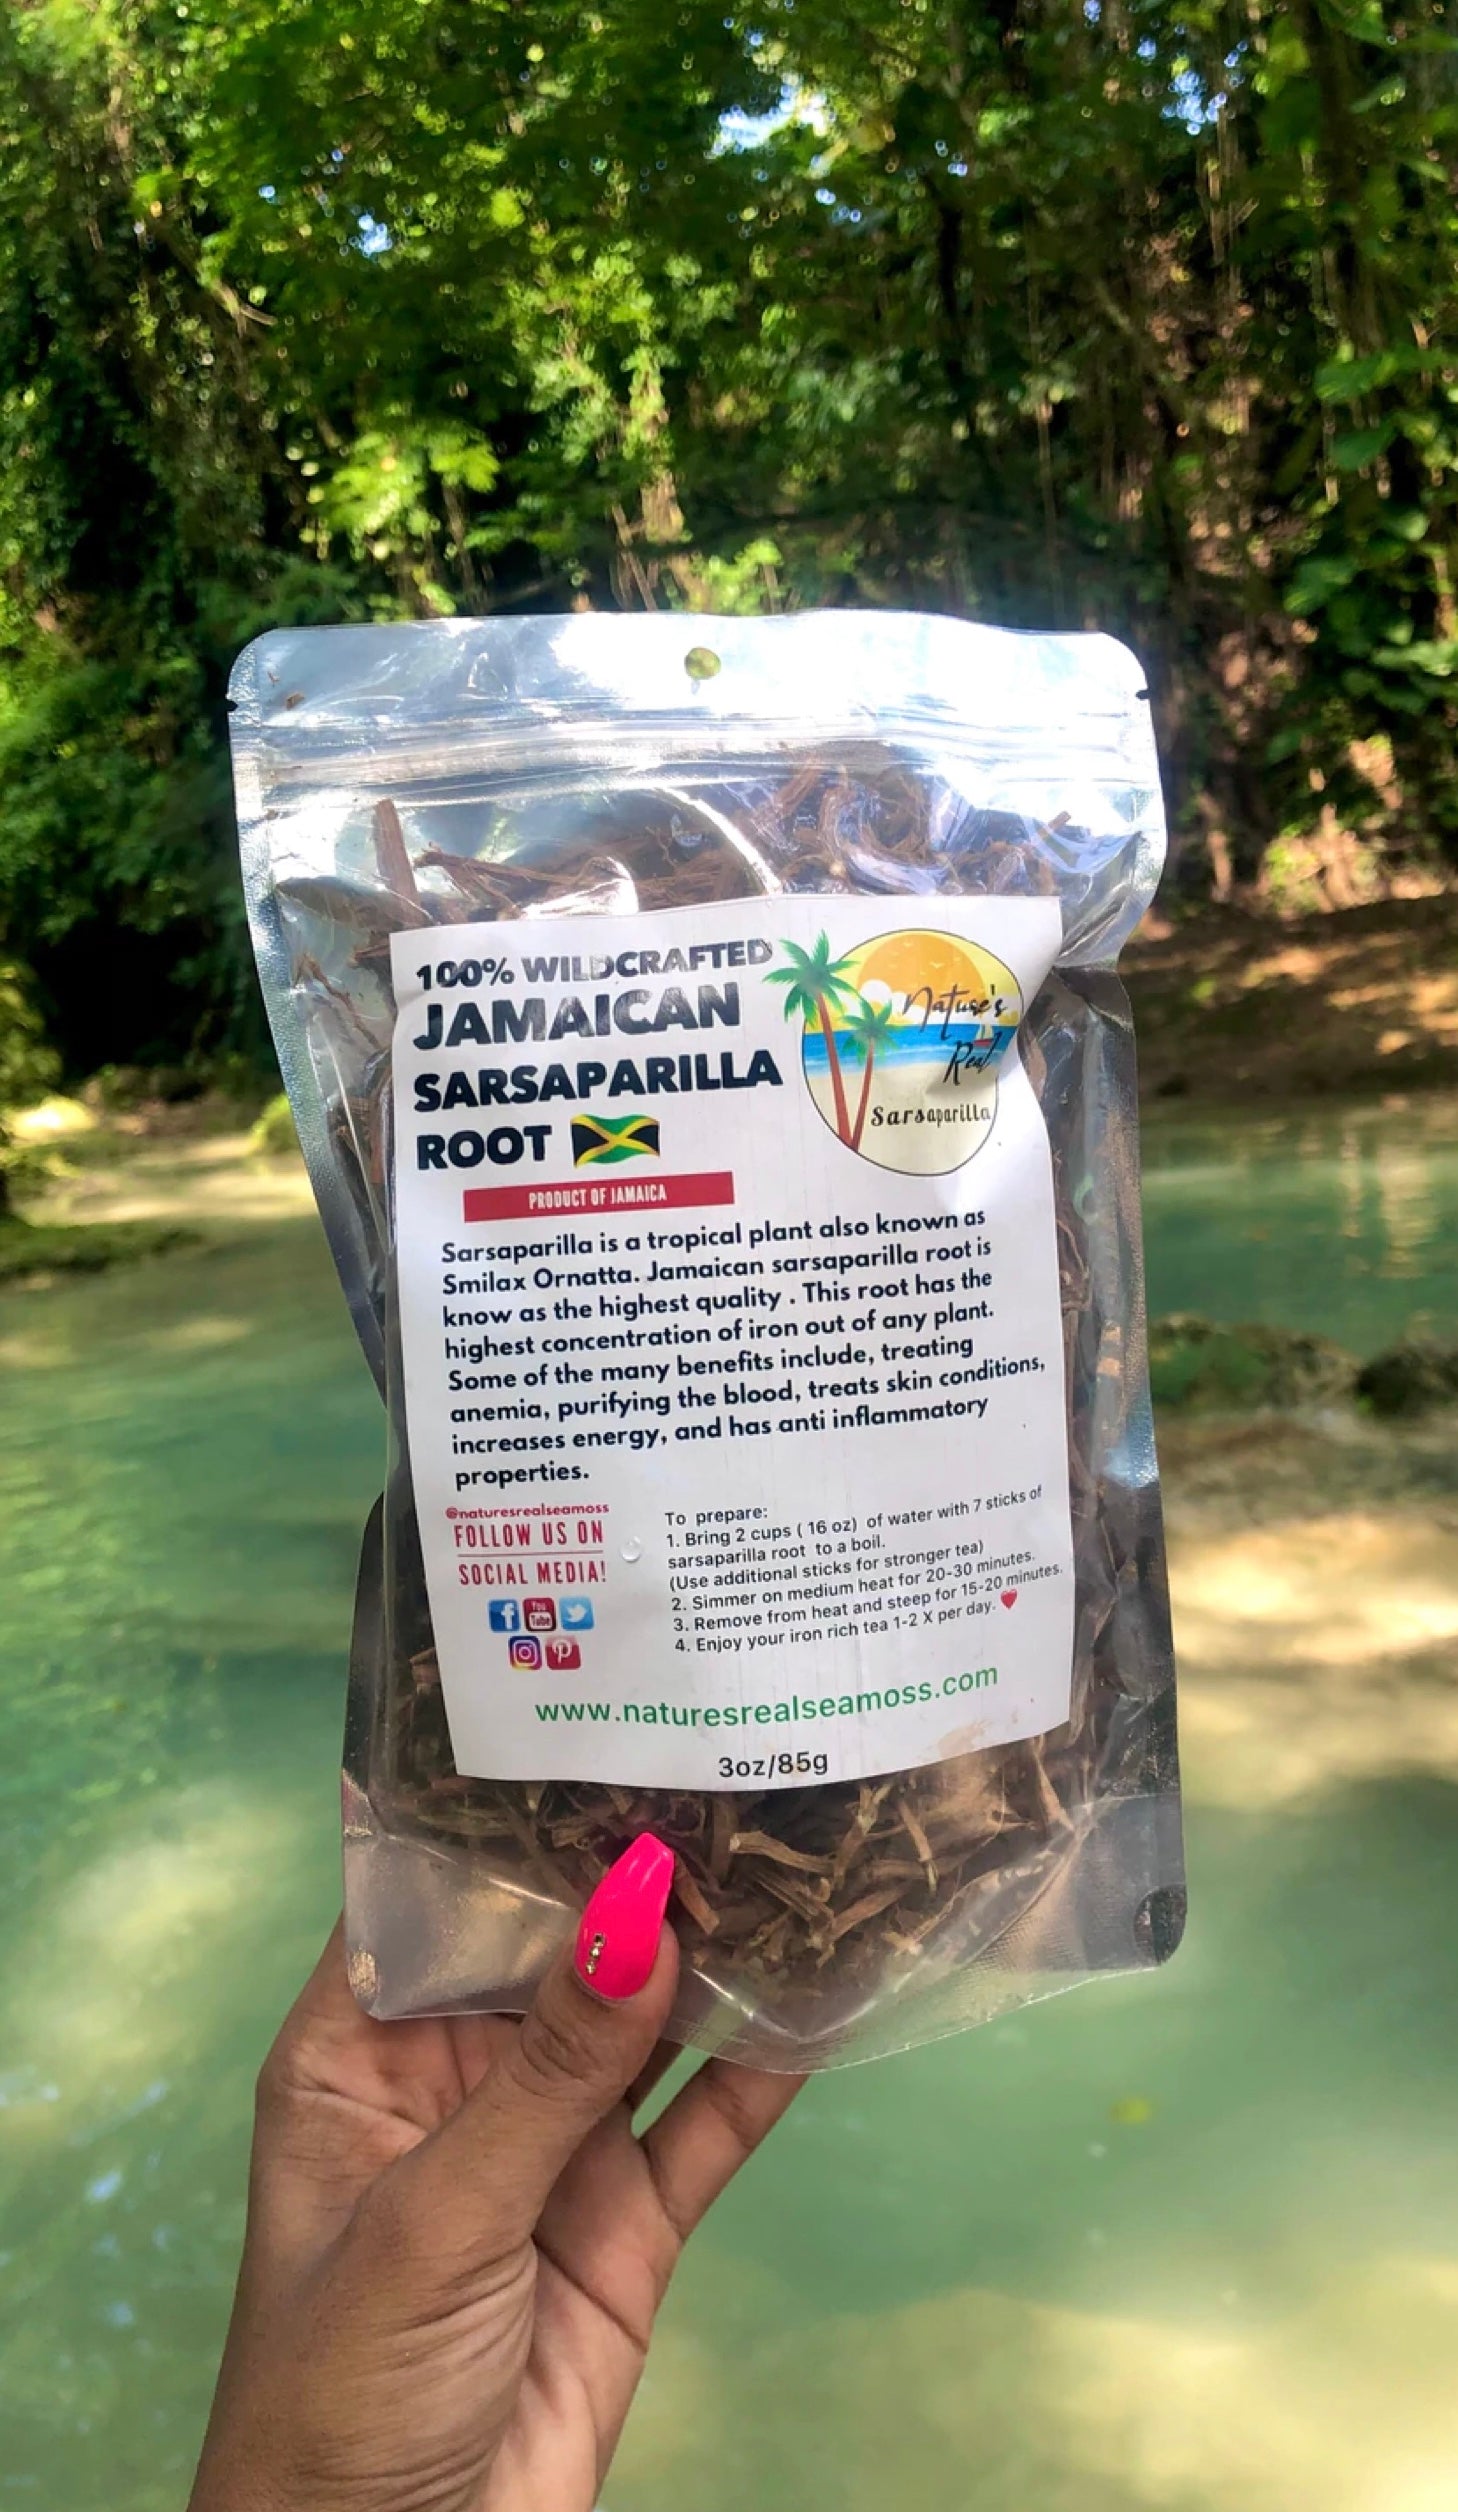 Jamaica Sarsaparilla root